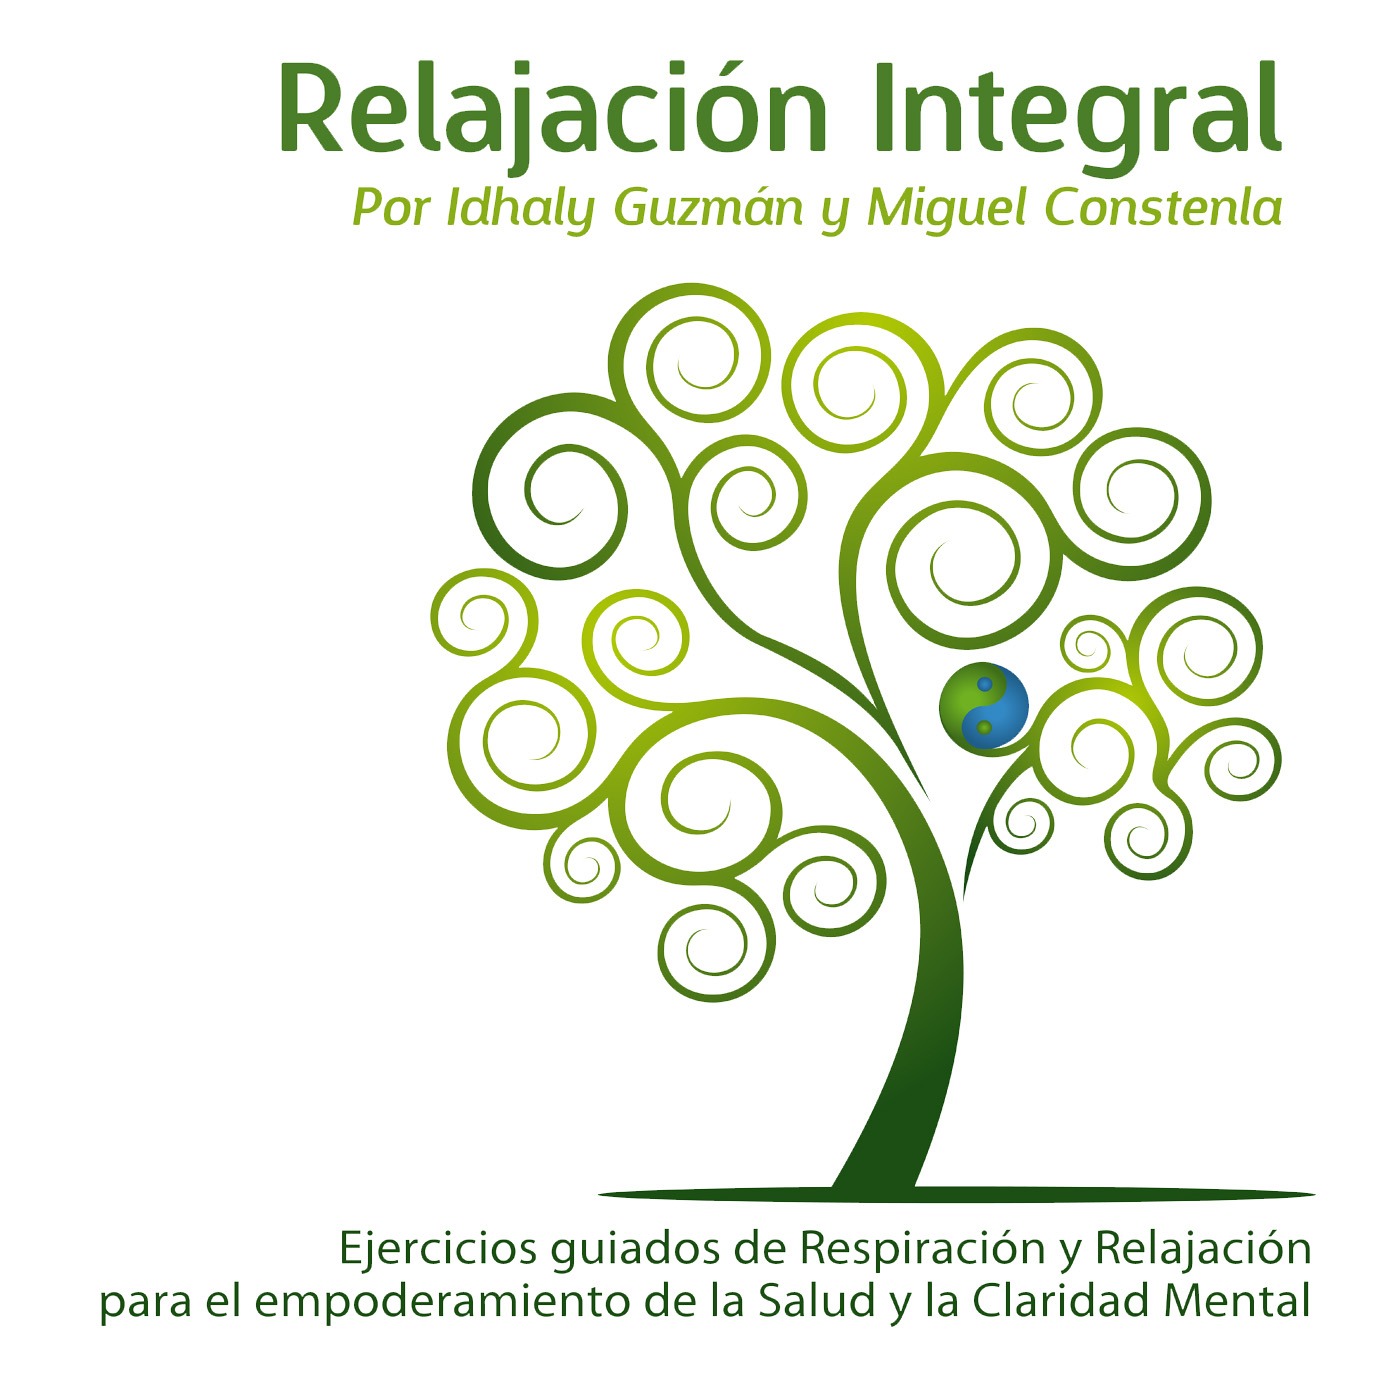 CD Relajacion Integral Idhaly Guzman Miguel Constenal